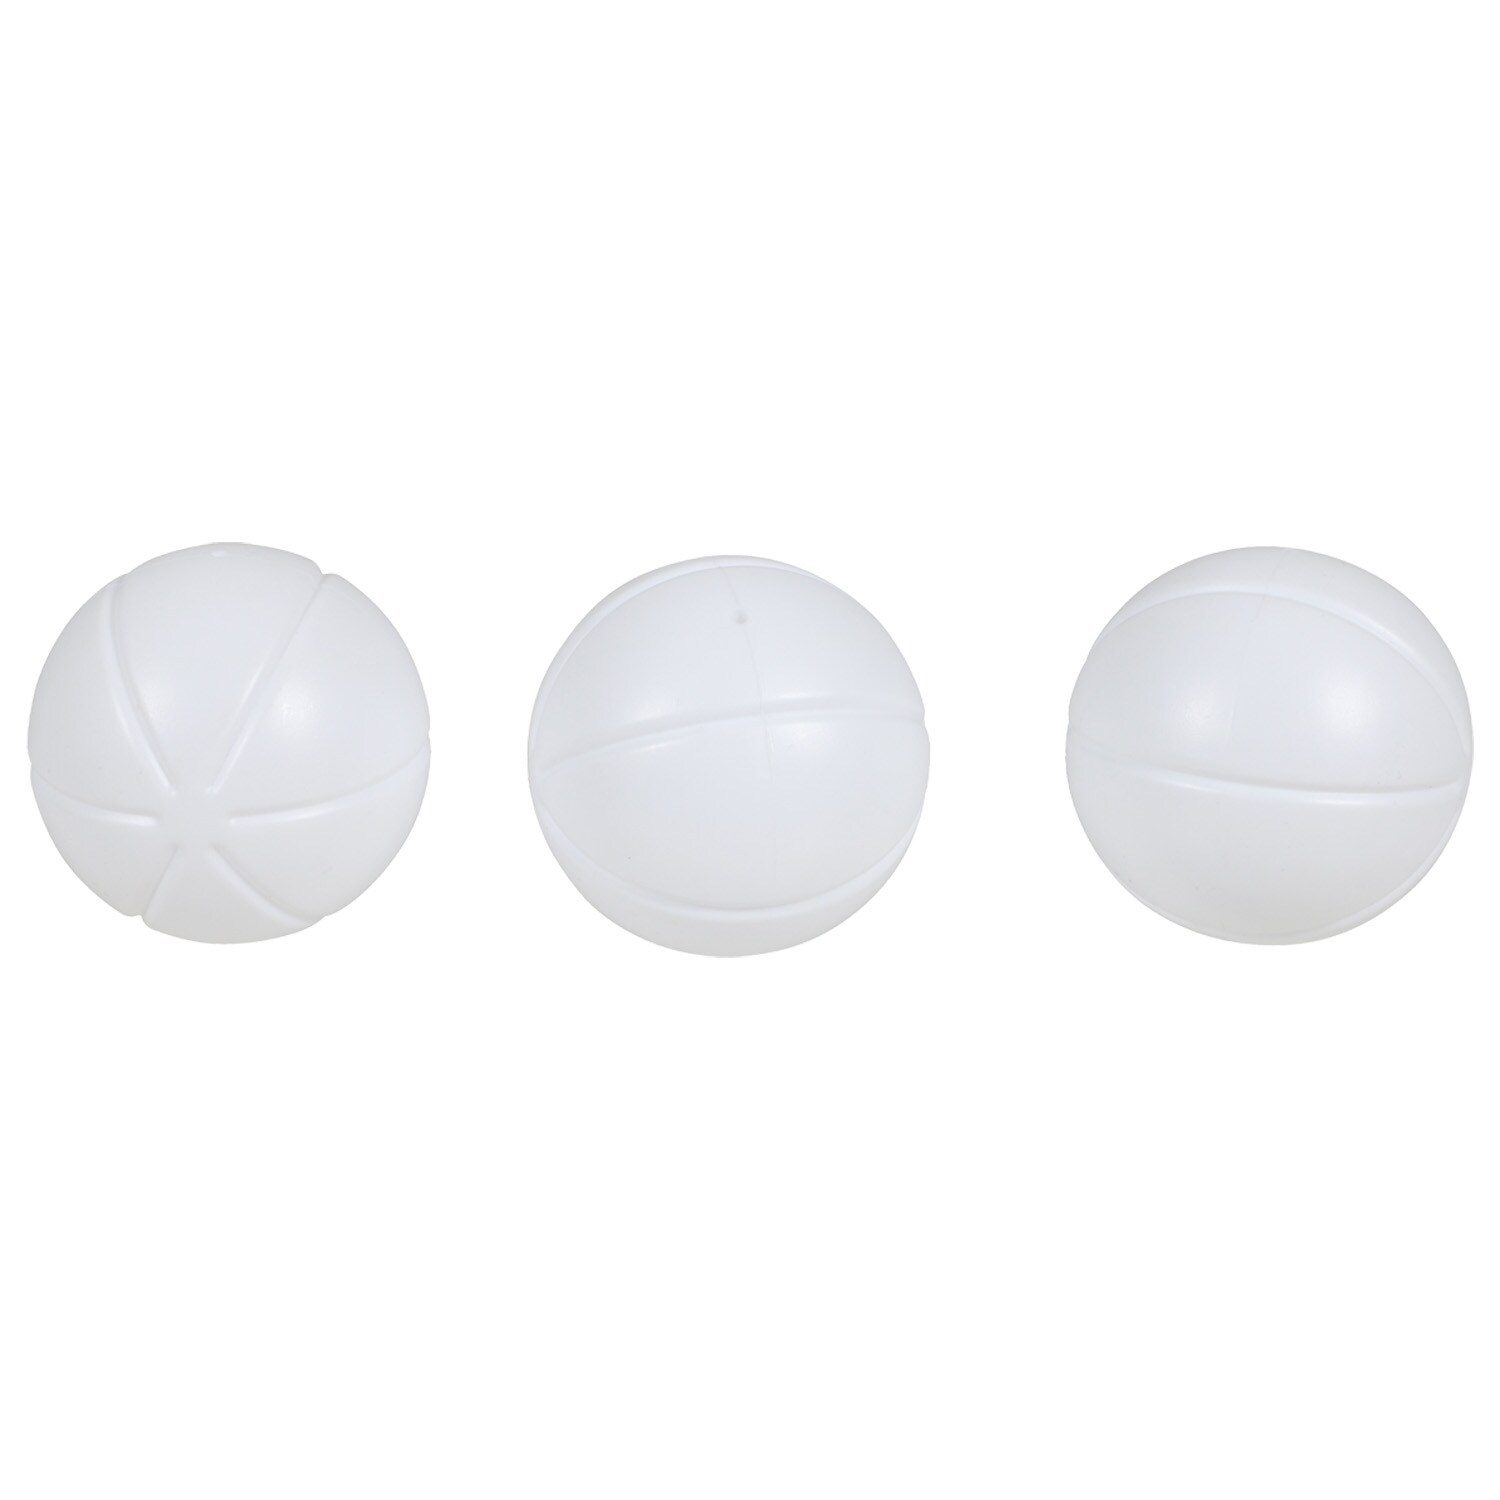 Bulk All Star Sports White Plastic Baseballs, 3-ct. Packs | Dollar Tree